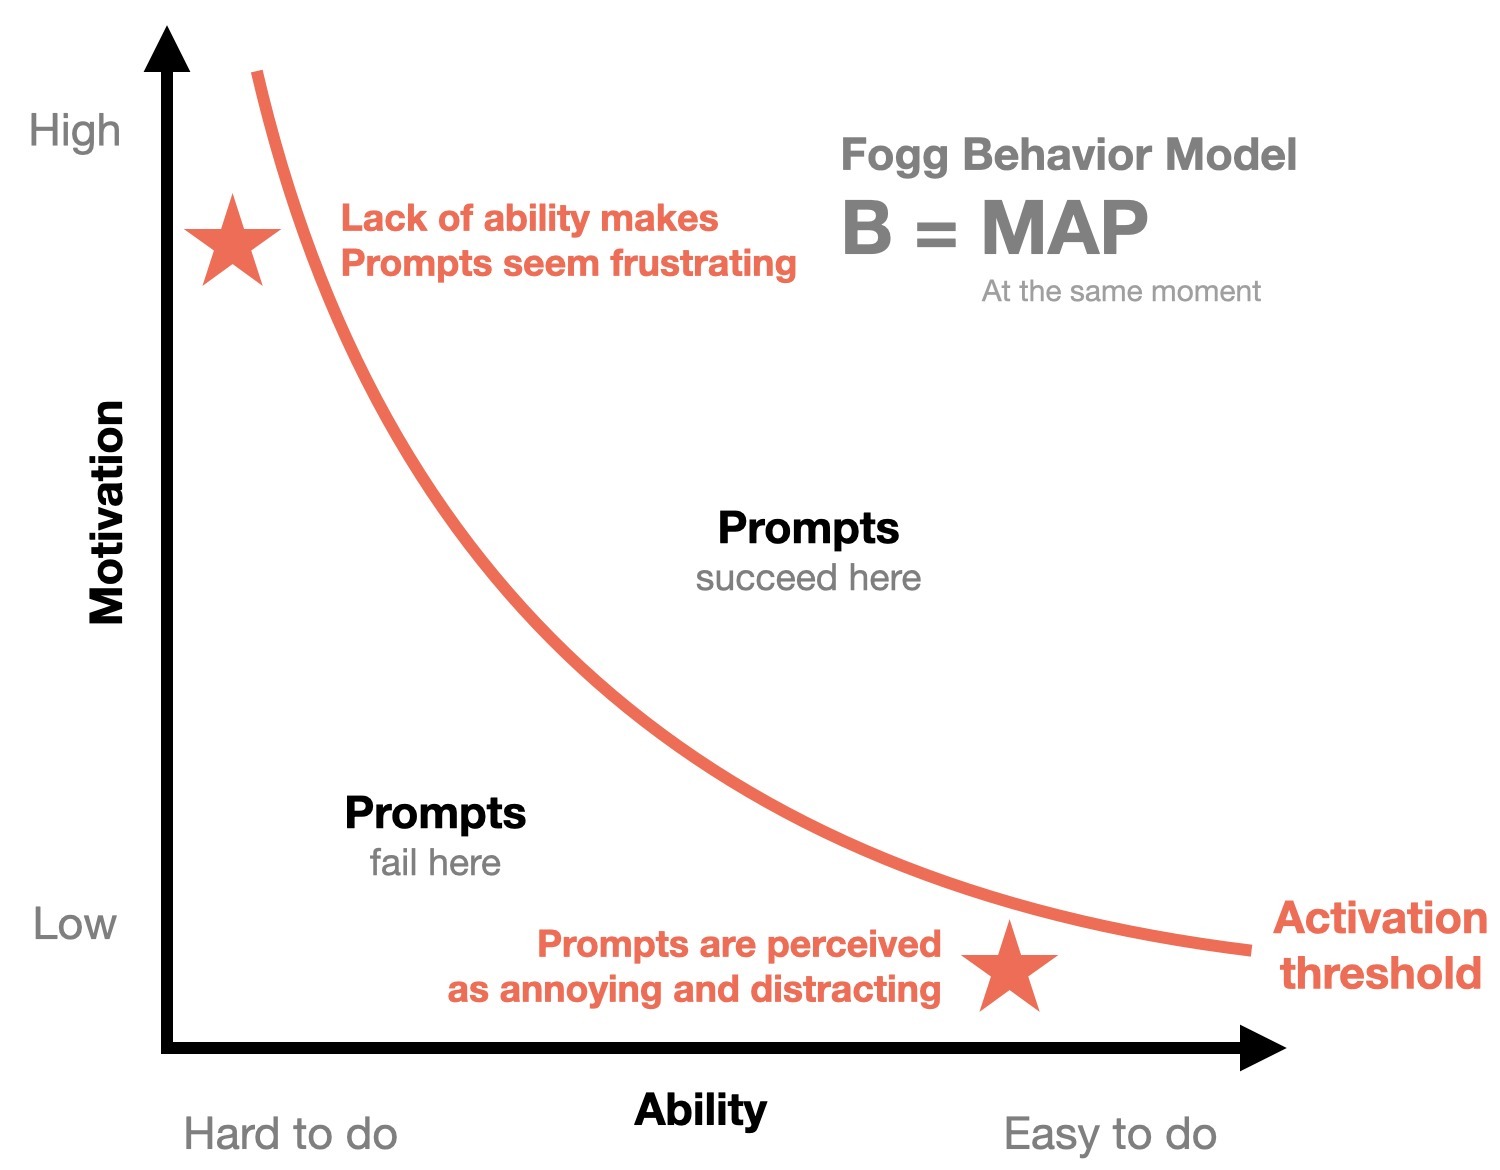 The Fogg Behavior Model